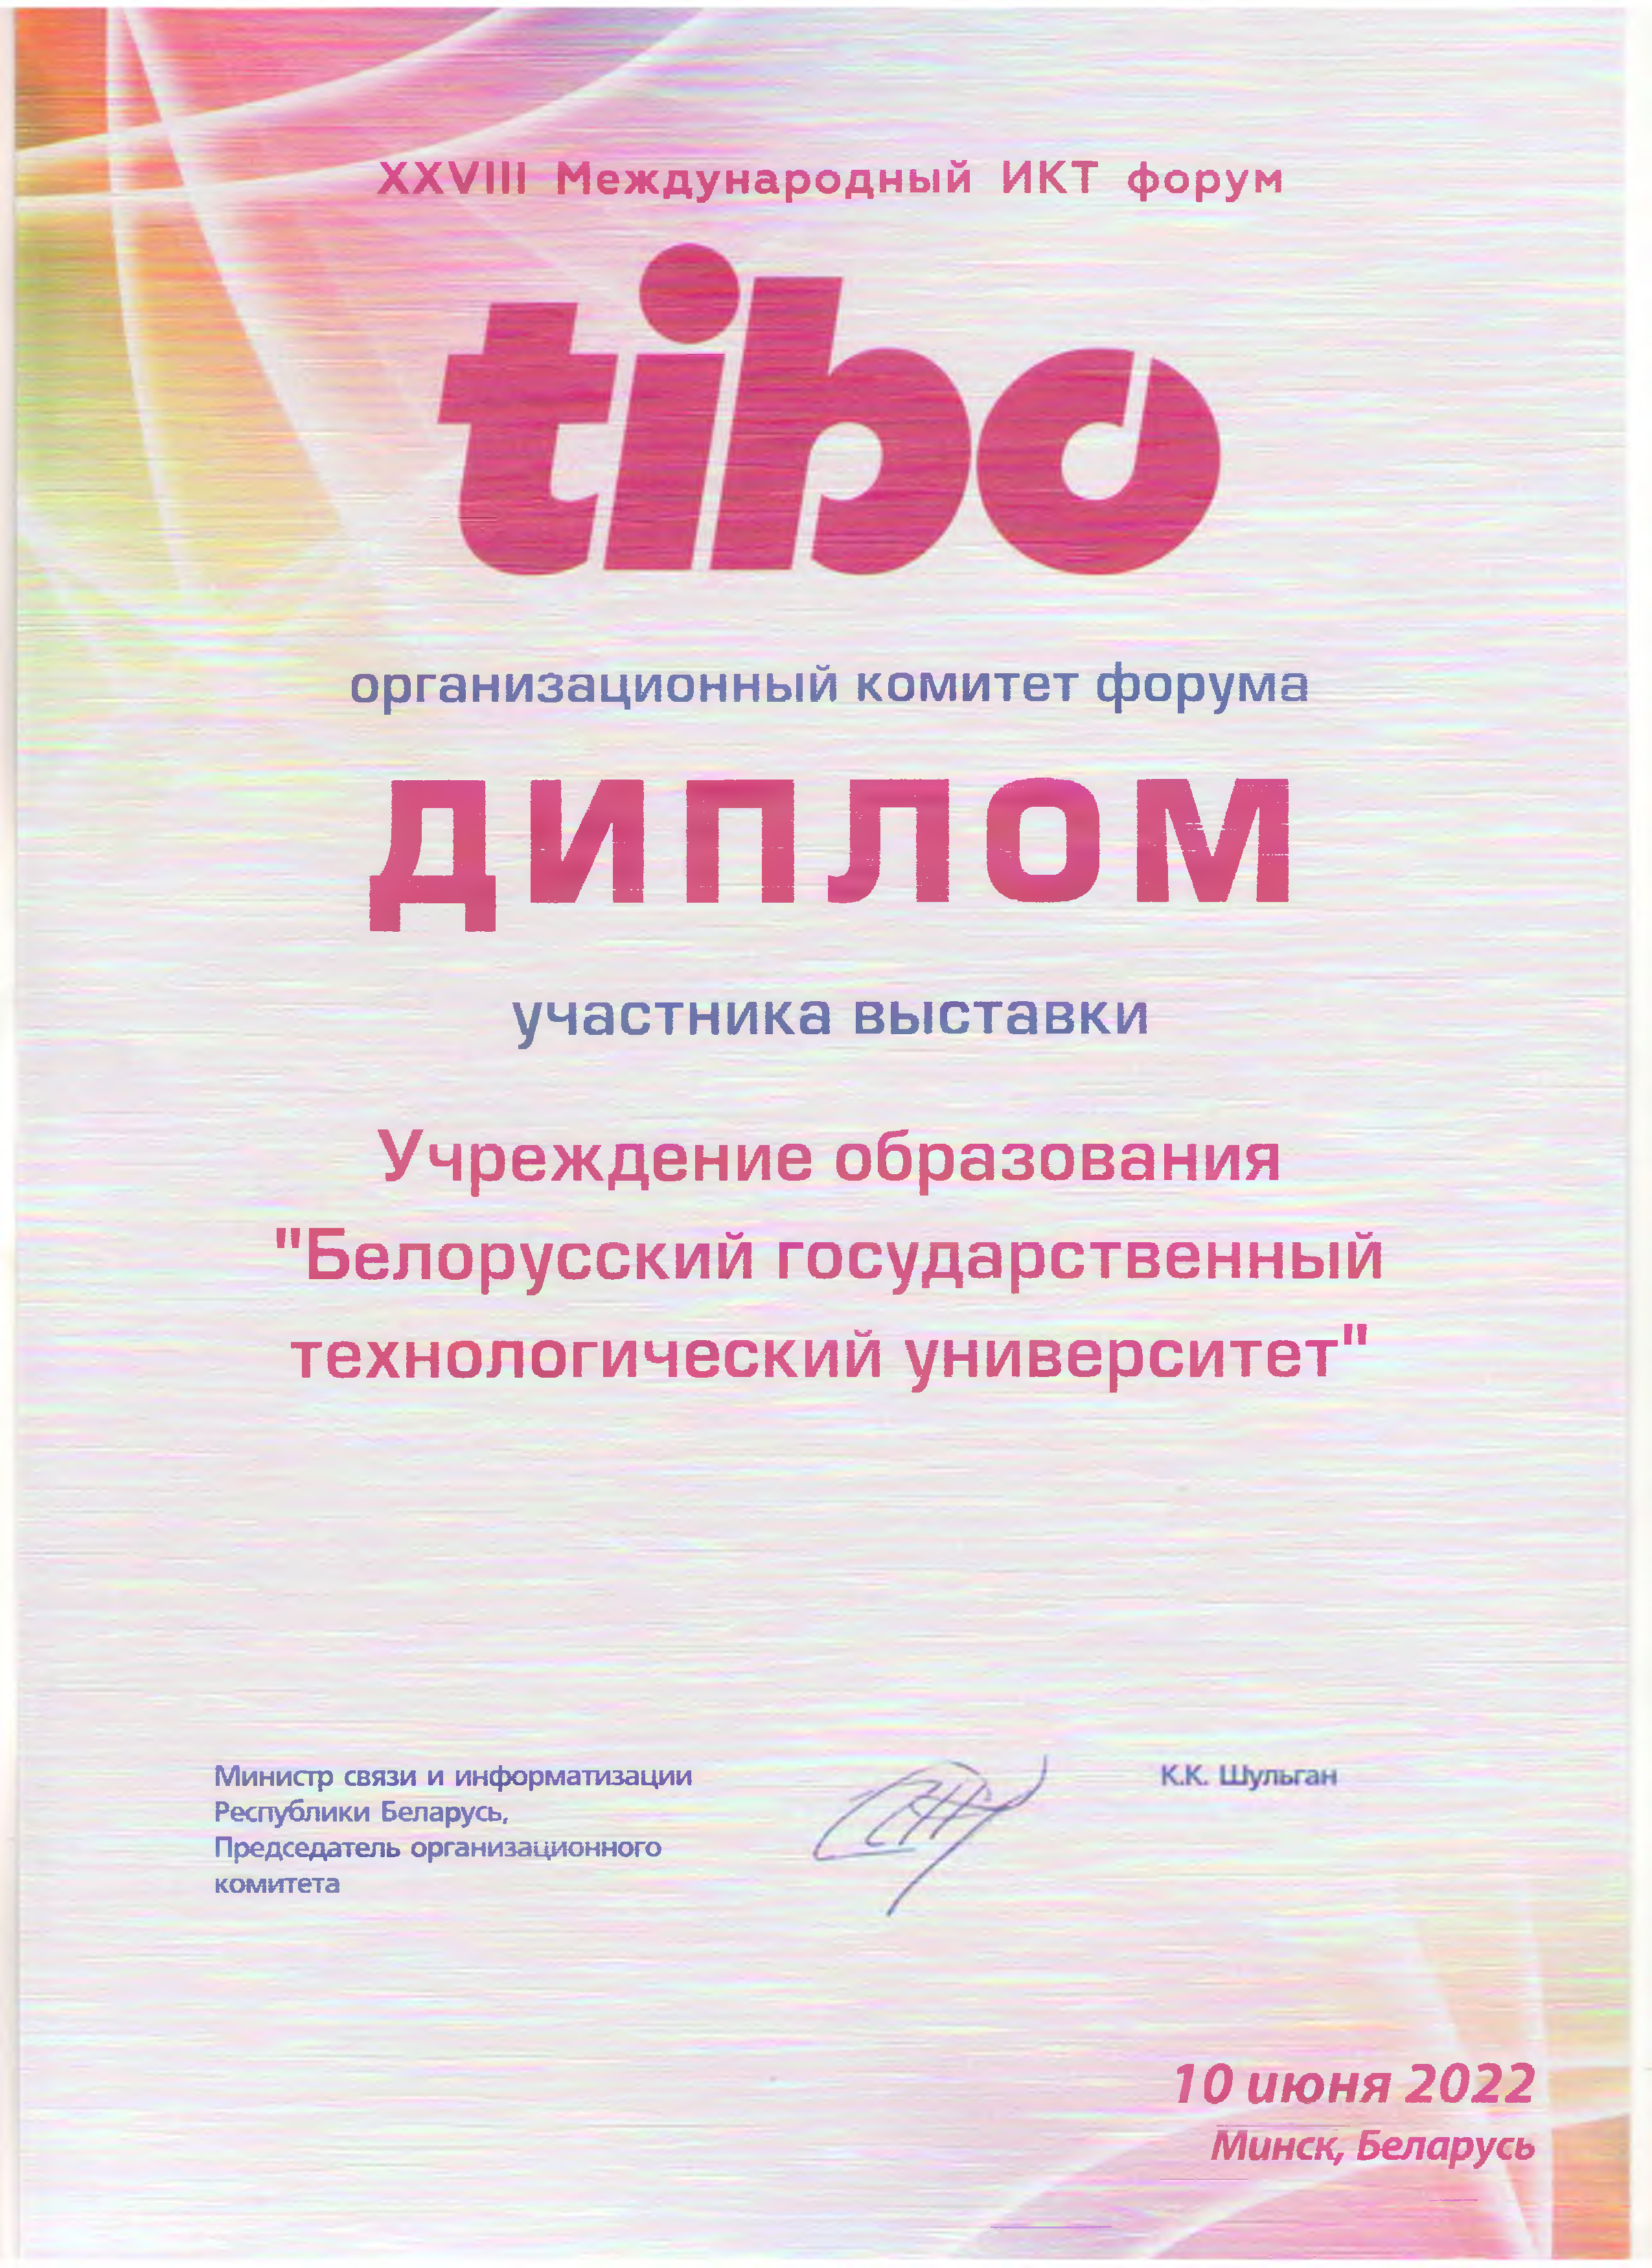 БГТУ получил диплом за активное участие в TIBO 2022